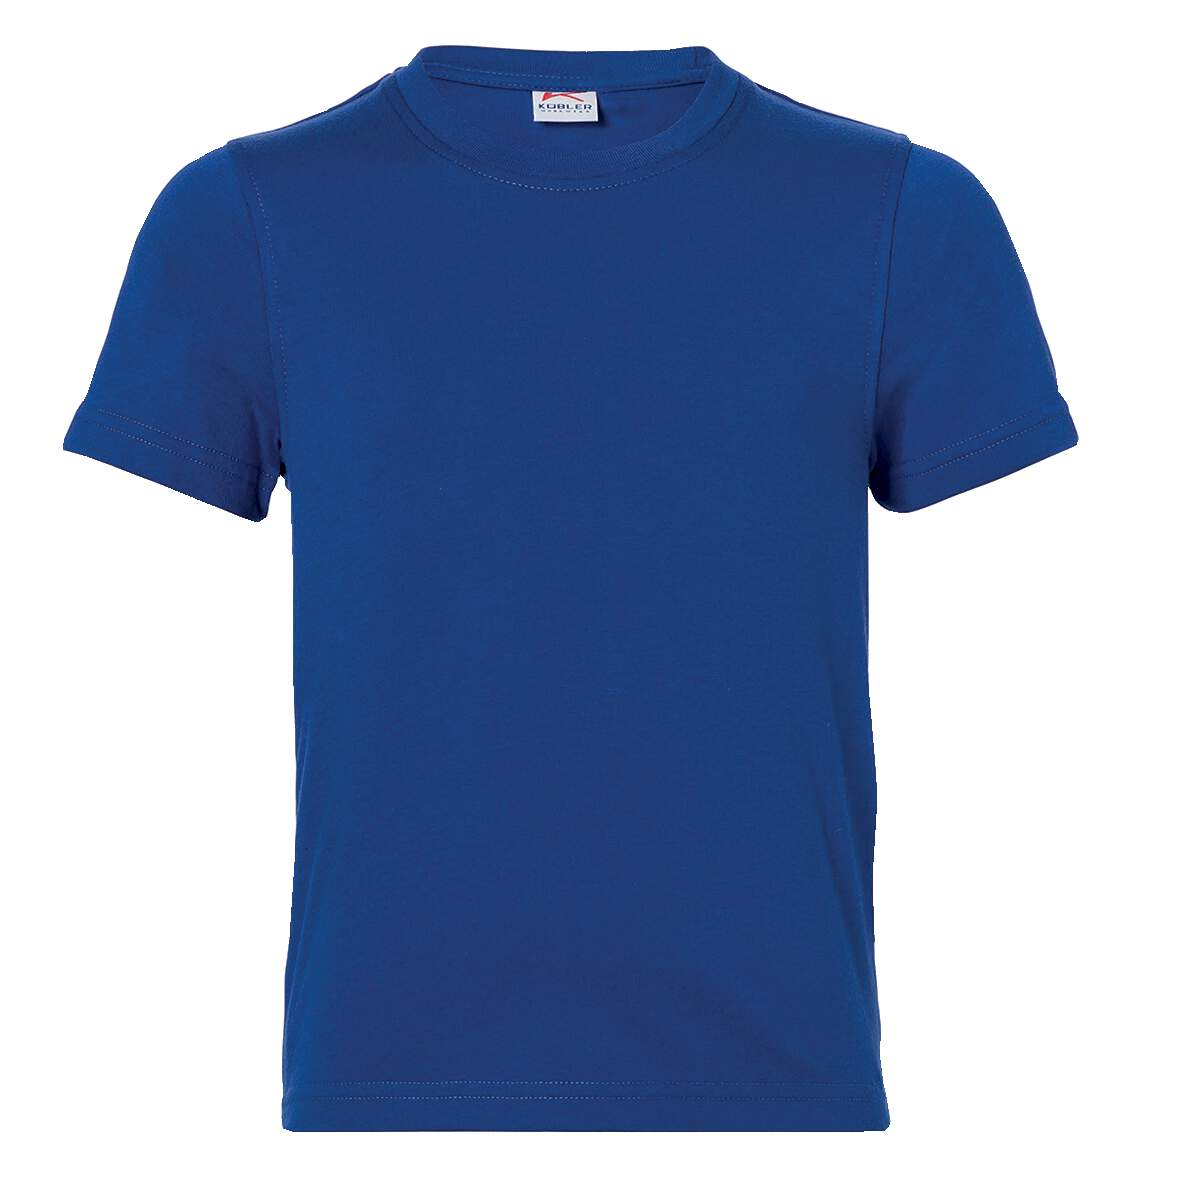 1253971 - T-Shirt Jungen Gr.128 kbl.blau